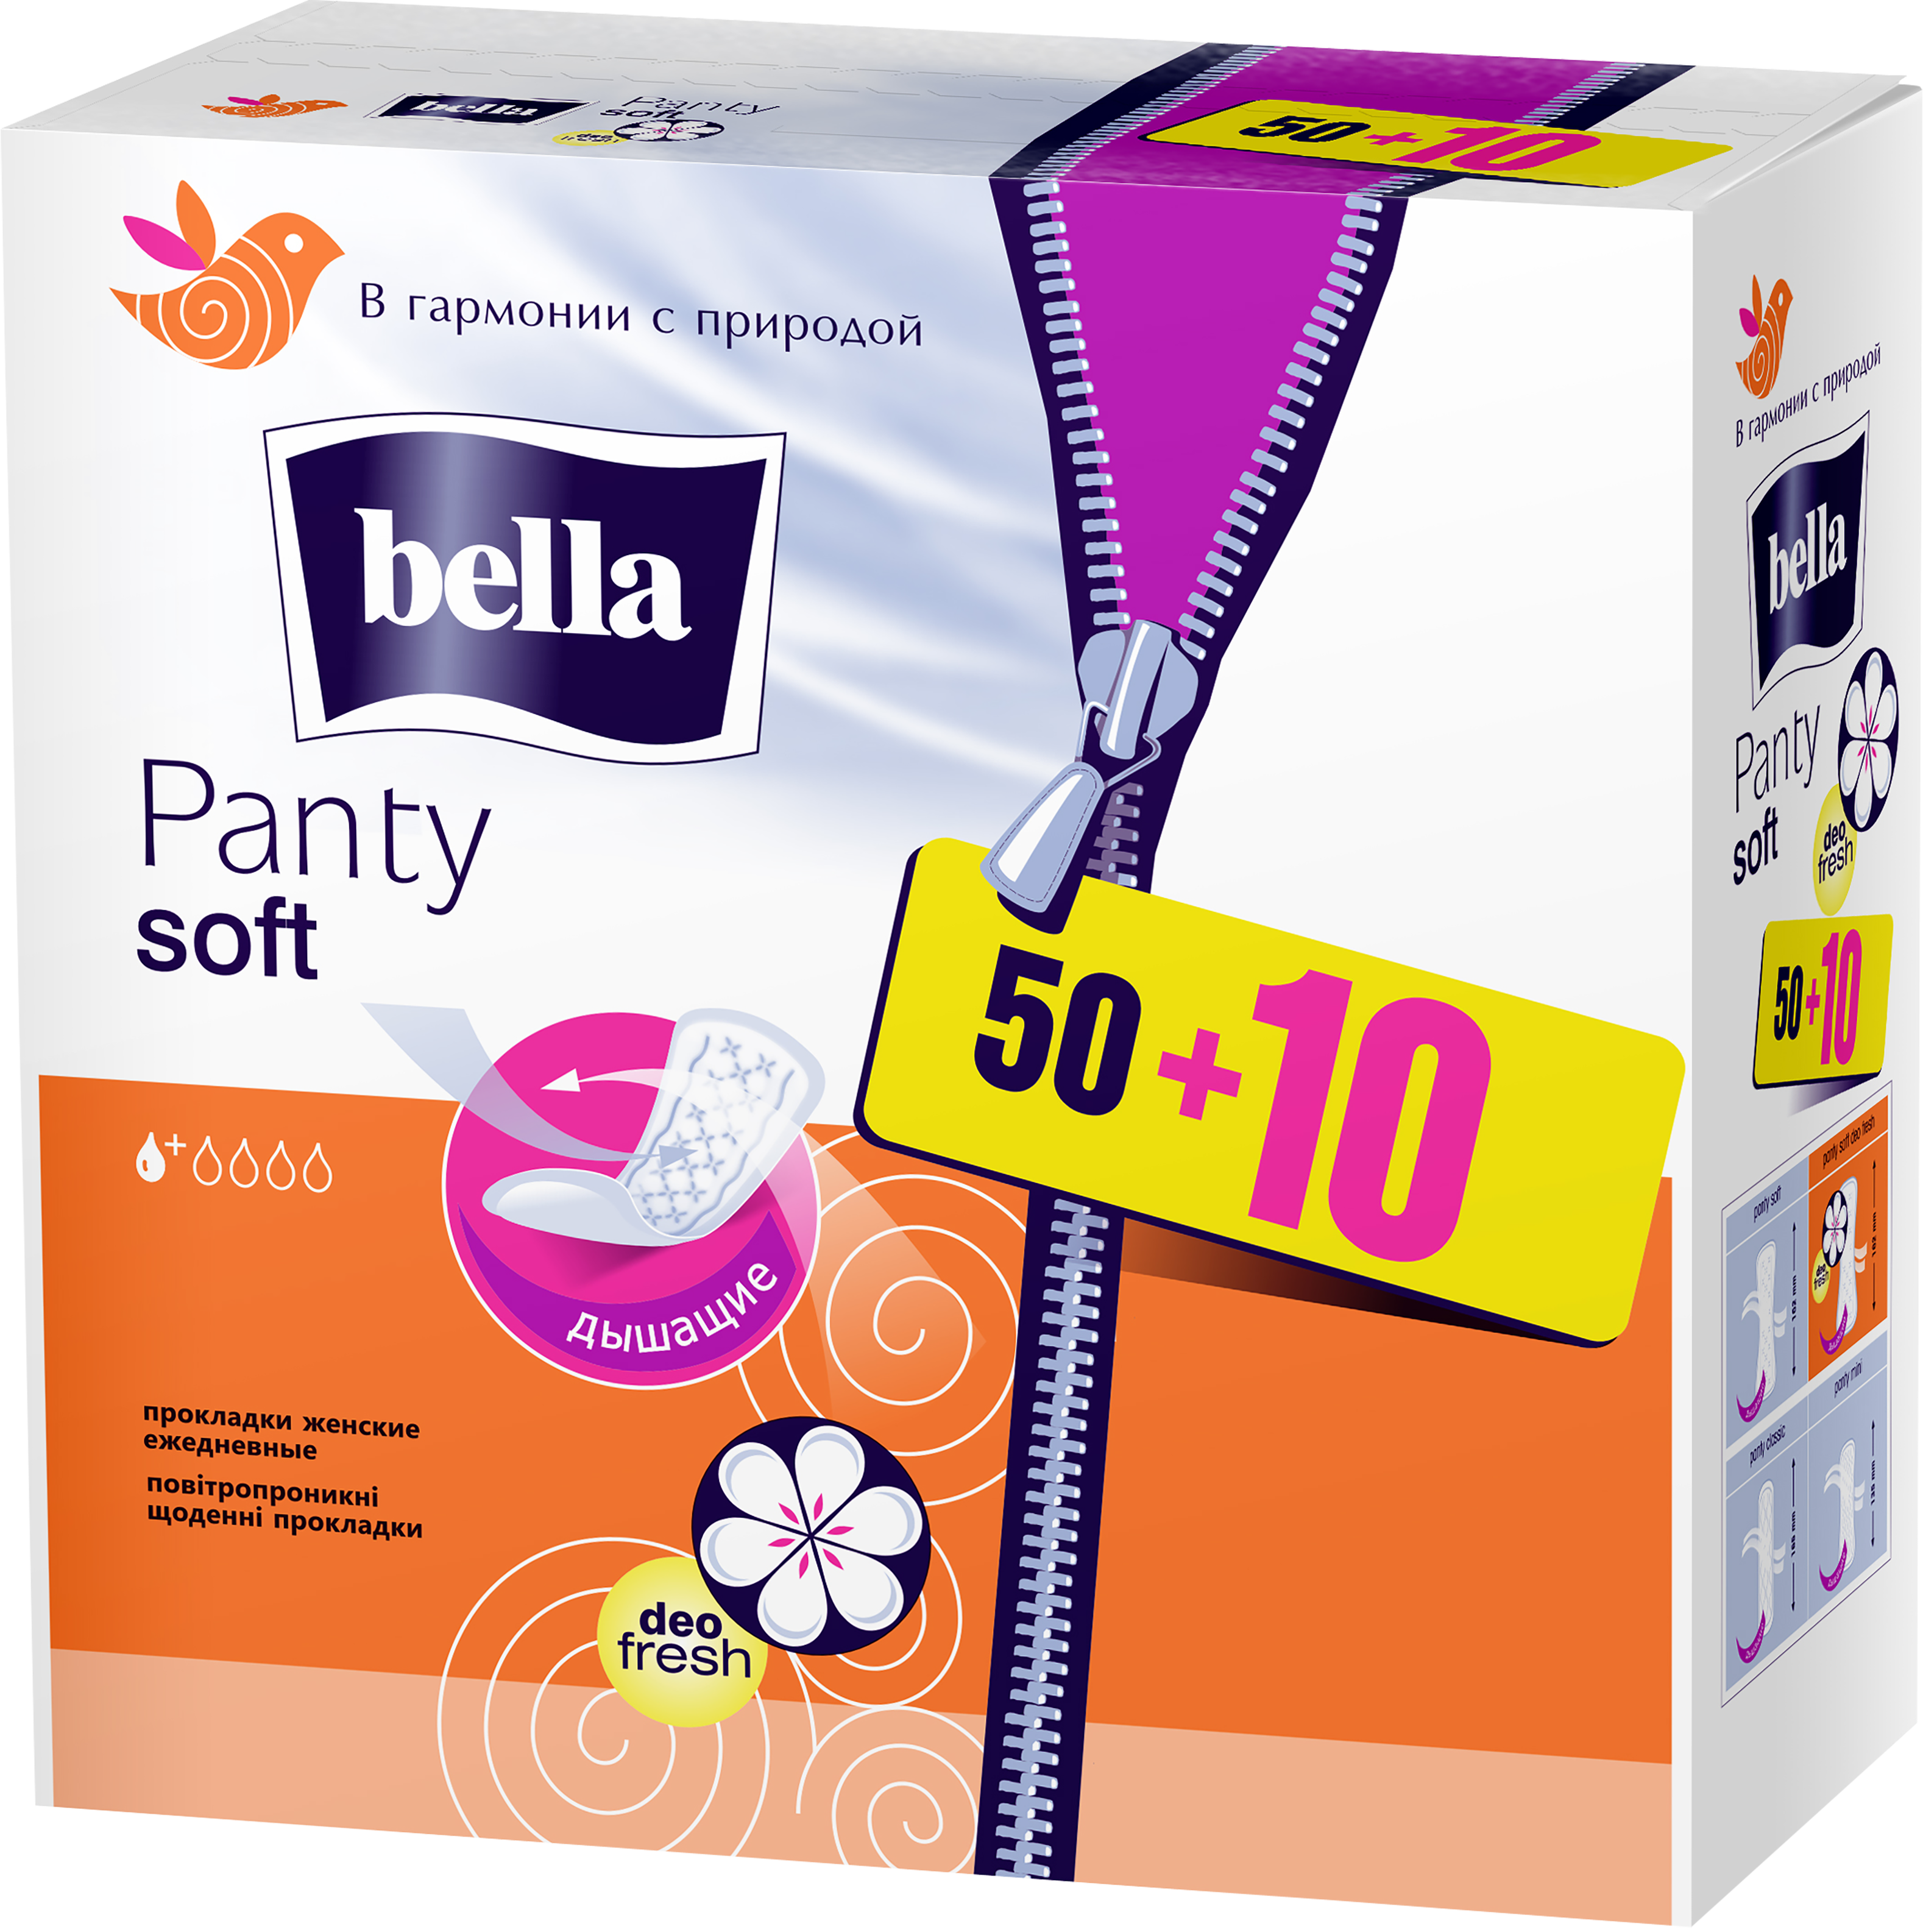 Щоденні прокладки Bella Panty Soft deo fresh 50+10 шт. - фото 1